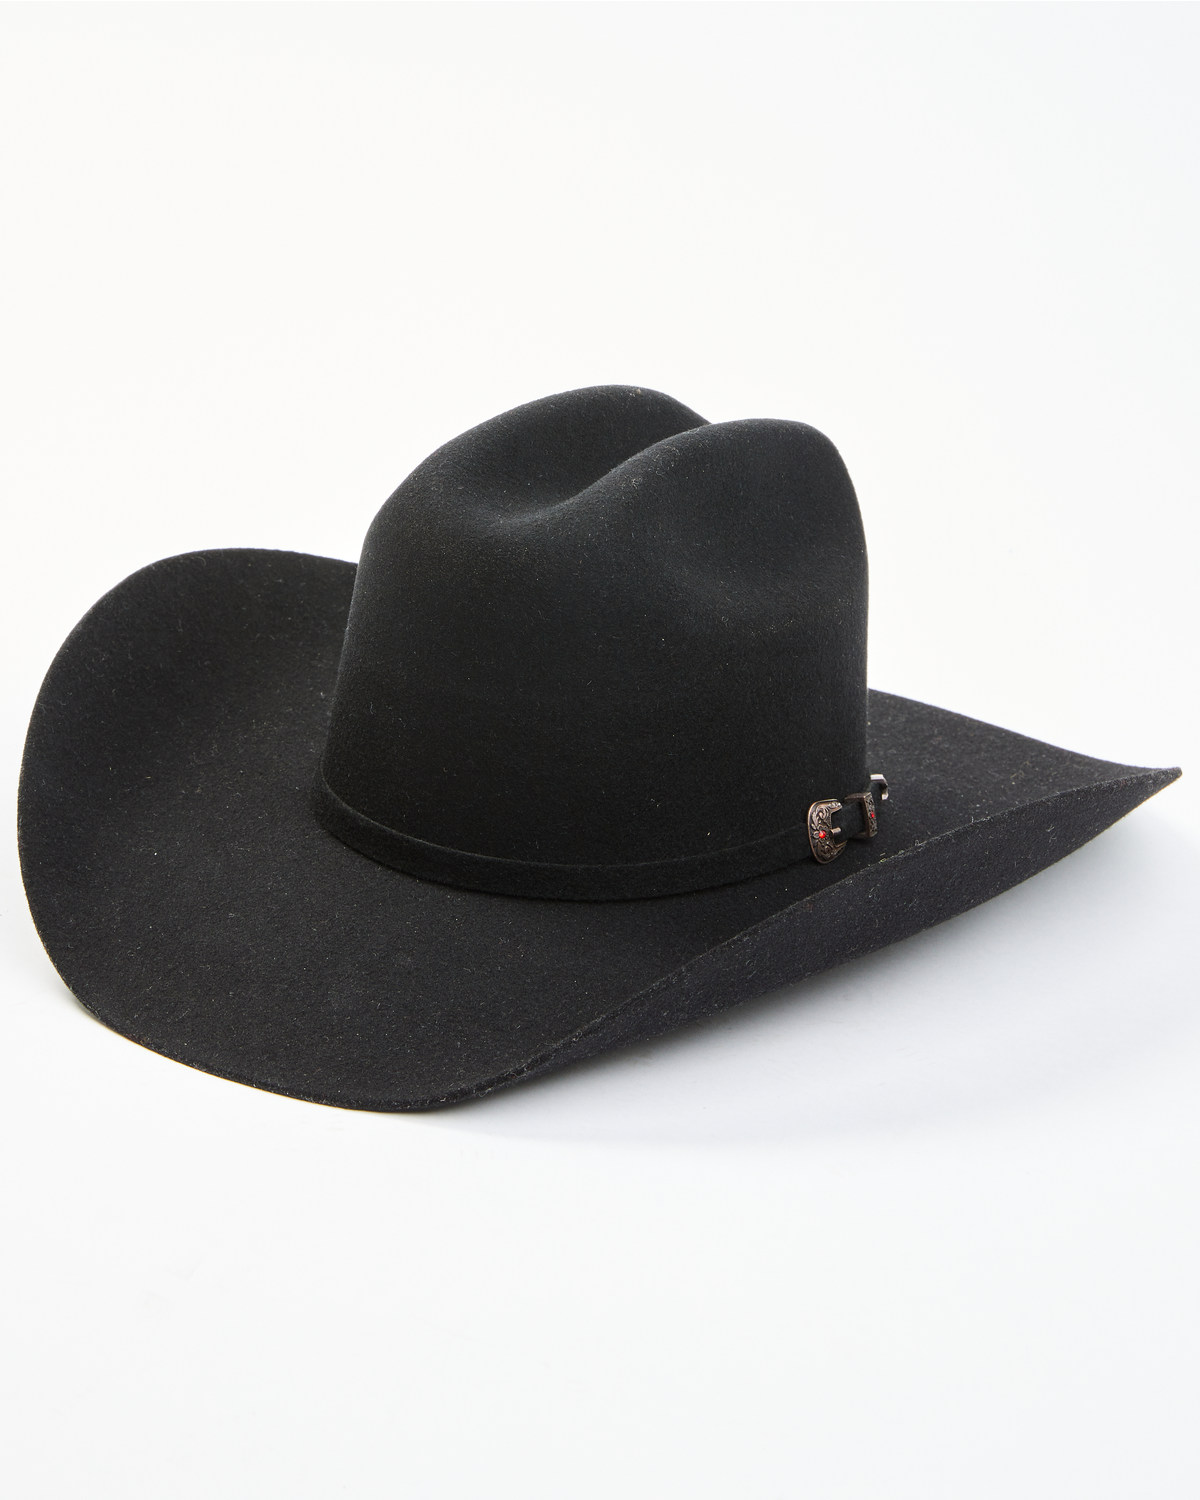 Cody James 5X Felt Cowboy Hat